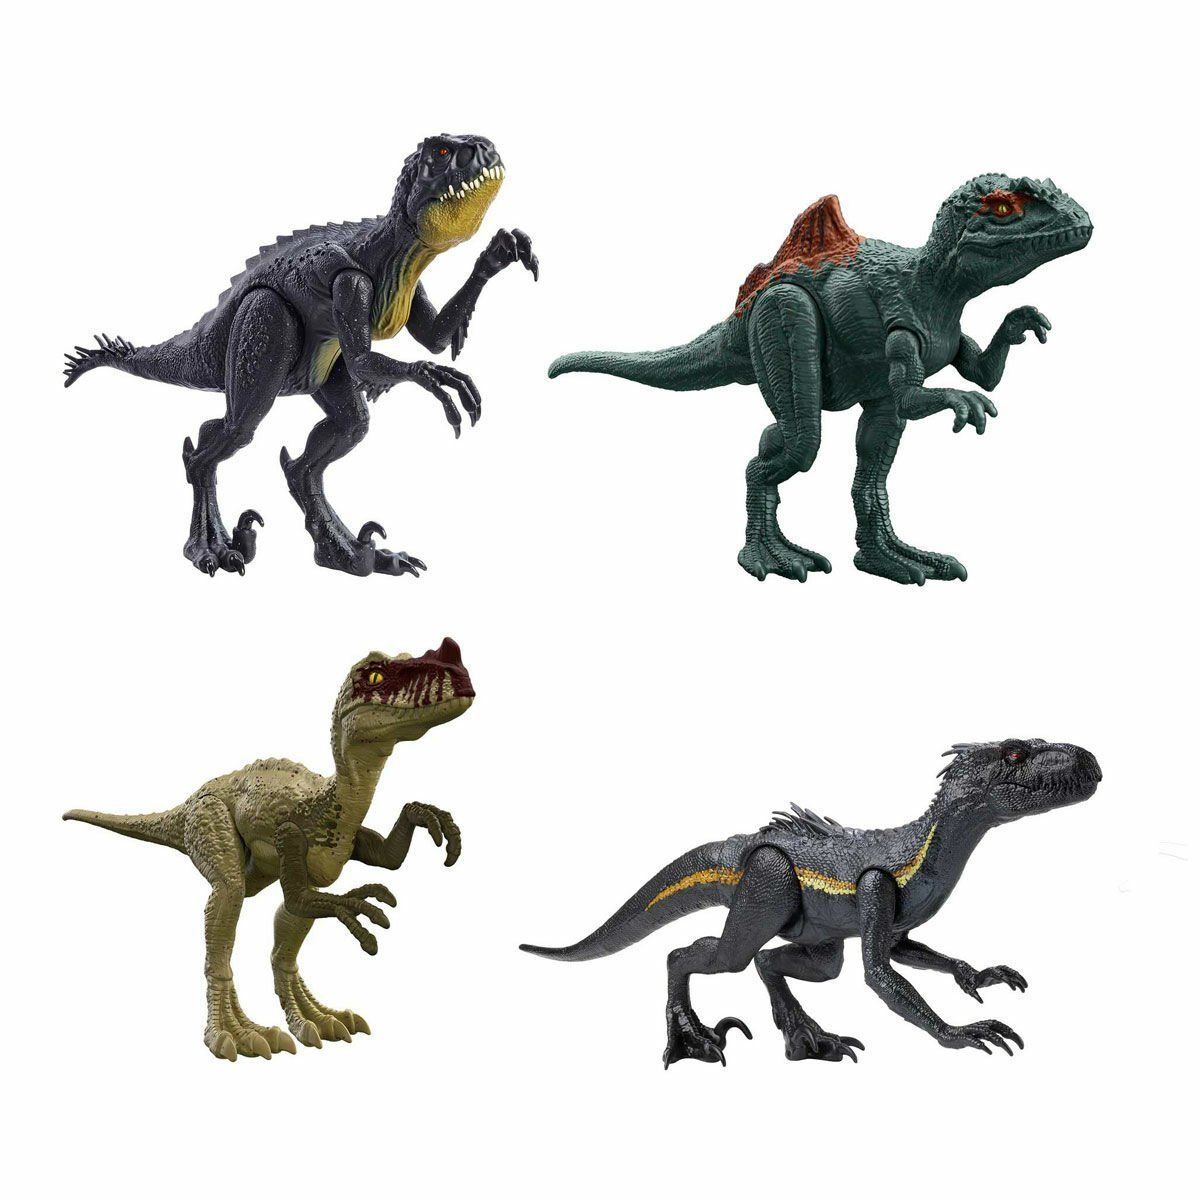 GWT54 Jurassic World 12 inch Dinozor Figürleri -1 adet fiyatıdır